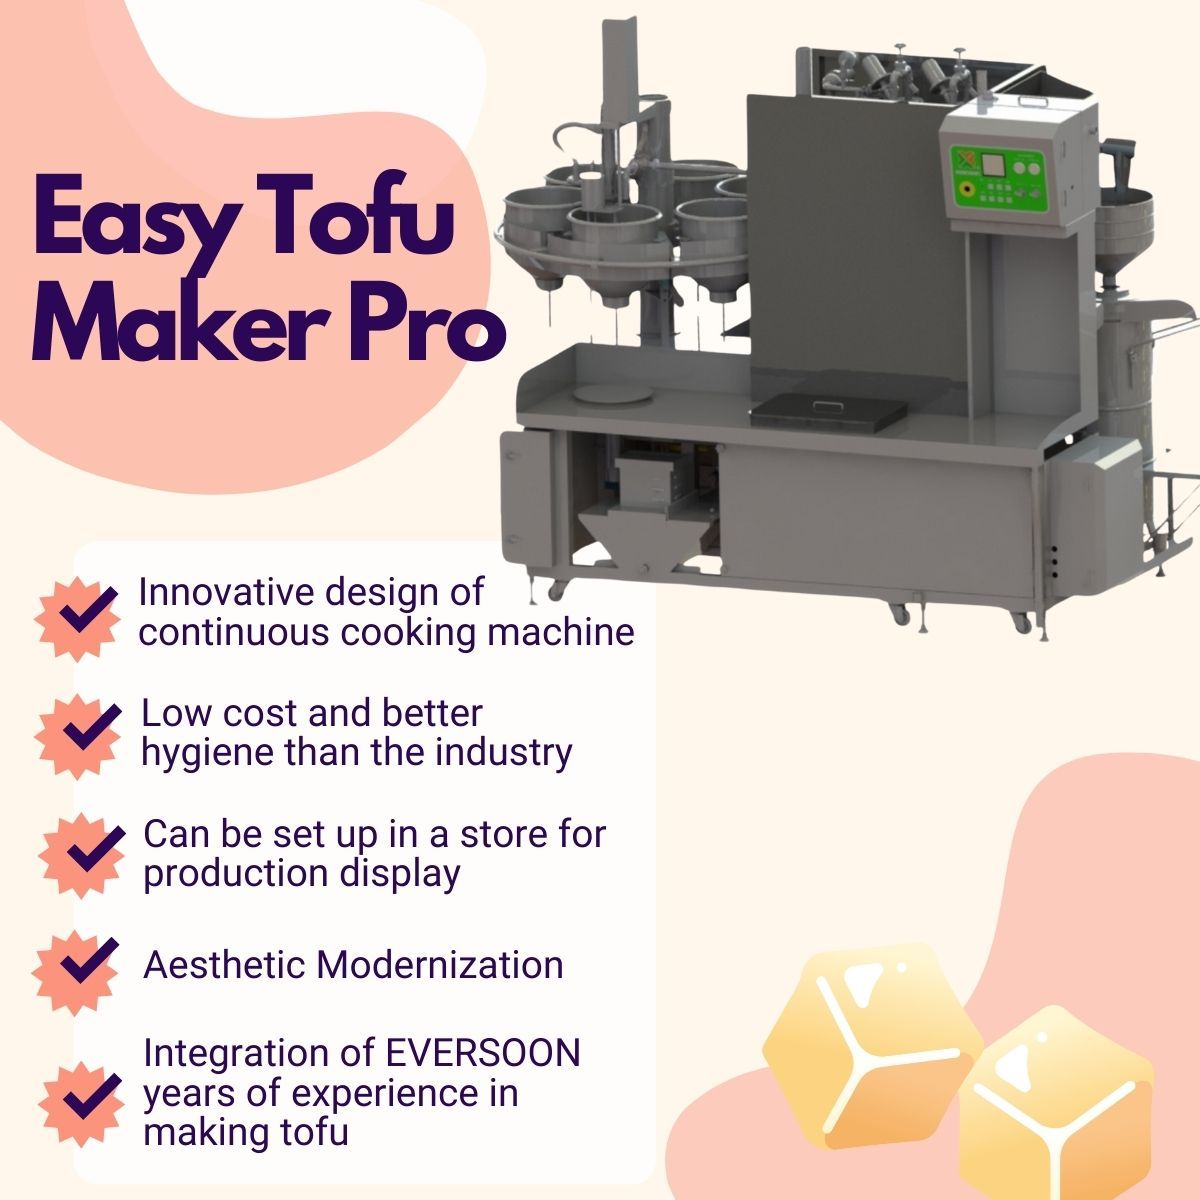 Automatische Tofu-Herstellungsmaschine, Easy Tofu Maker, Gebratene Tofu-Maschine, Industrielle Tofu-Herstellung, kleine Tofu-Maschine, Sojalebensmittel-Ausrüstung, Sojafleischmaschine, Sojamilch- und Tofu-Herstellungsmaschine, Tofu-Ausrüstung, Tofu-Maschine, Tofu-Maschine zum Verkauf, Tofu-Maschinenhersteller, Tofu-Maschinenhersteller, Tofu-Maschinenpreis, Tofu-Maschinen und -Ausrüstung, Tofu-Hersteller, Tofu-Herstellermaschine, Tofu-Herstellung, Tofu-Herstellungsausrüstung, Tofu-Herstellungsmaschine, Tofu-Herstellungsmaschinenpreis, Tofu-Hersteller, Tofu-Herstellung, Tofu-Herstellungsausrüstung, Tofu-Herstellungsanlage, Tofu-Produktionsausrüstung, Tofu-Produktionslinie, Tofu-Produktionslinienpreis, Tofuhersteller, automatische Tofu-Maschine, vegane Fleischmaschine, vegane Fleischproduktionslinie, Gemüse-Tofu-Maschinen und -Ausrüstung, kommerzielle Tofu-Maschine, automatische Sojamilchmaschine, automatische Sojamilchherstellungsmaschine, Easy Tofu Maker, Herstellung von Sojamilch, Soja-Getränke-Maschine, Sojamilch und Tofu herstellende kommerzielle Sojamilchmaschine, Sojamilch- und Tofuherstellungsmaschine, Sojamilchkochmaschine, Sojamilchmaschine, Sojamilchmaschine aus Taiwan, Sojamilchmaschinen, Sojamilchmaschinen und -ausrüstungen, Sojamilchhersteller, Sojamilchherstellungsmaschine, Sojamilchhersteller, Sojamilchproduktion, Sojamilchproduktionsausrüstung, Sojamilchproduktionslinie, Sojamilchherstellungsmaschine Preis, Sojabohnenverarbeitungsmaschine, Sojamilchmaschine, Sojamilch- und Tofuherstellungsmaschine, kommerzieller Sojamilchhersteller, kommerzielle Sojabohnenmilchmaschine, kommerzielle Sojamilchmaschine, Sojamilchmaschine kommerziell, Sojamilchkocher für den gewerblichen Gebrauch, Sojamilchschleifer für den gewerblichen Gebrauch, Sojamilchmaschine für den gewerblichen Gebrauch, Sojamilchmaschinen für den gewerblichen Gebrauch, Laden für die Herstellung von Sojamilch